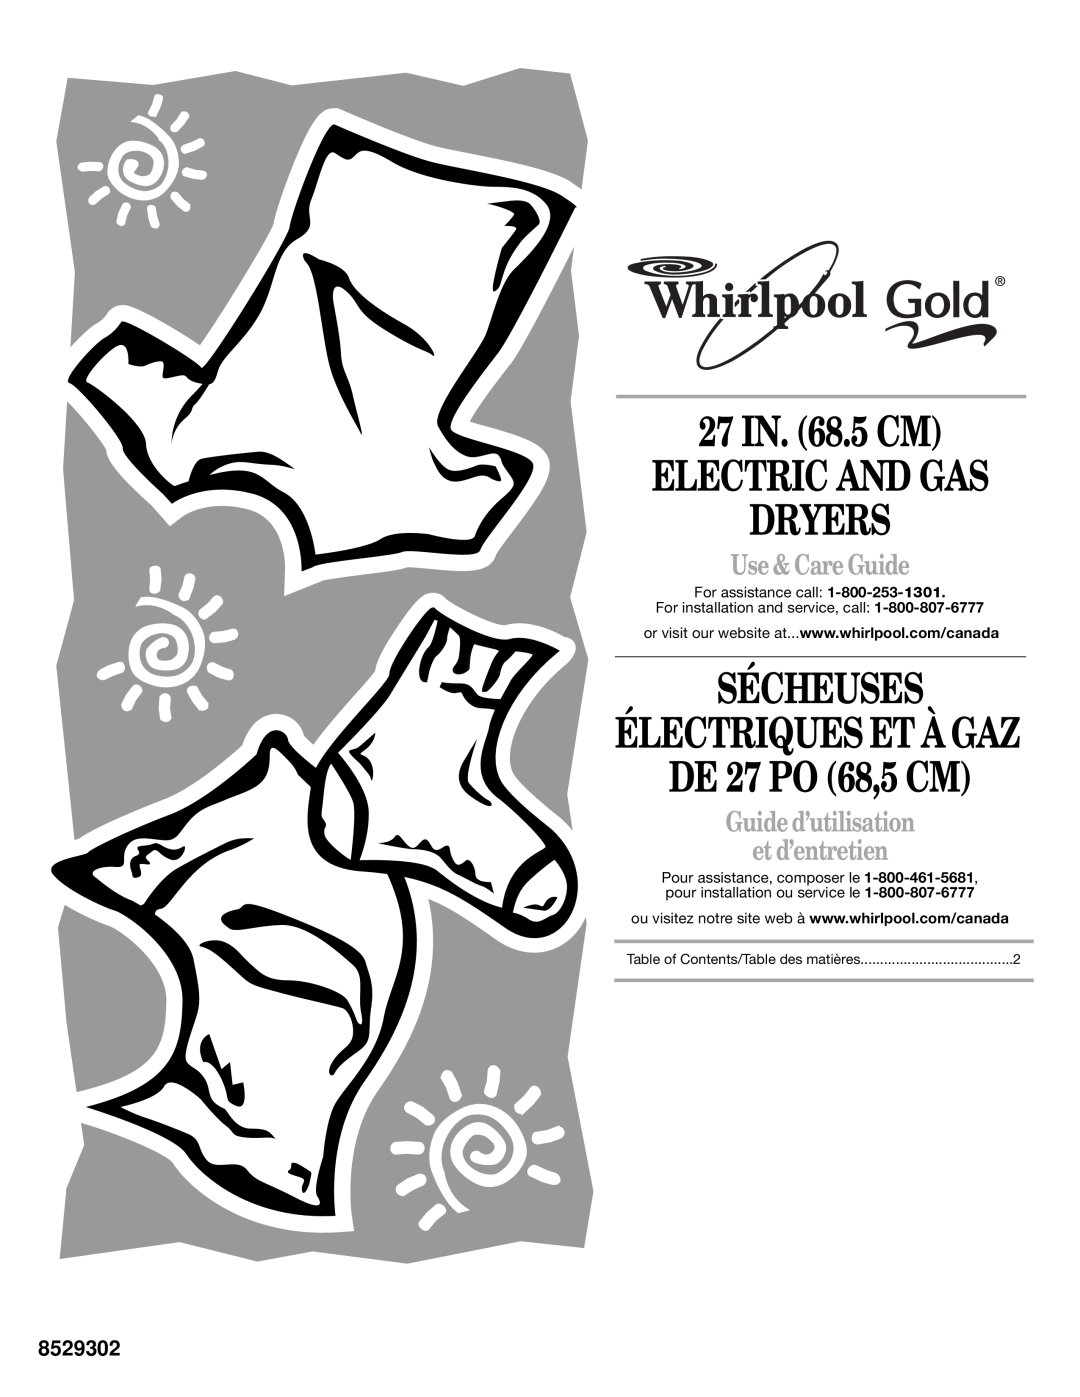 Whirlpool 8529302 manual 27 IN. 68.5 CM ELECTRIC AND GAS DRYERS, Sécheuses, DE 27 PO 68,5 CM, Électriques Et À Gaz 